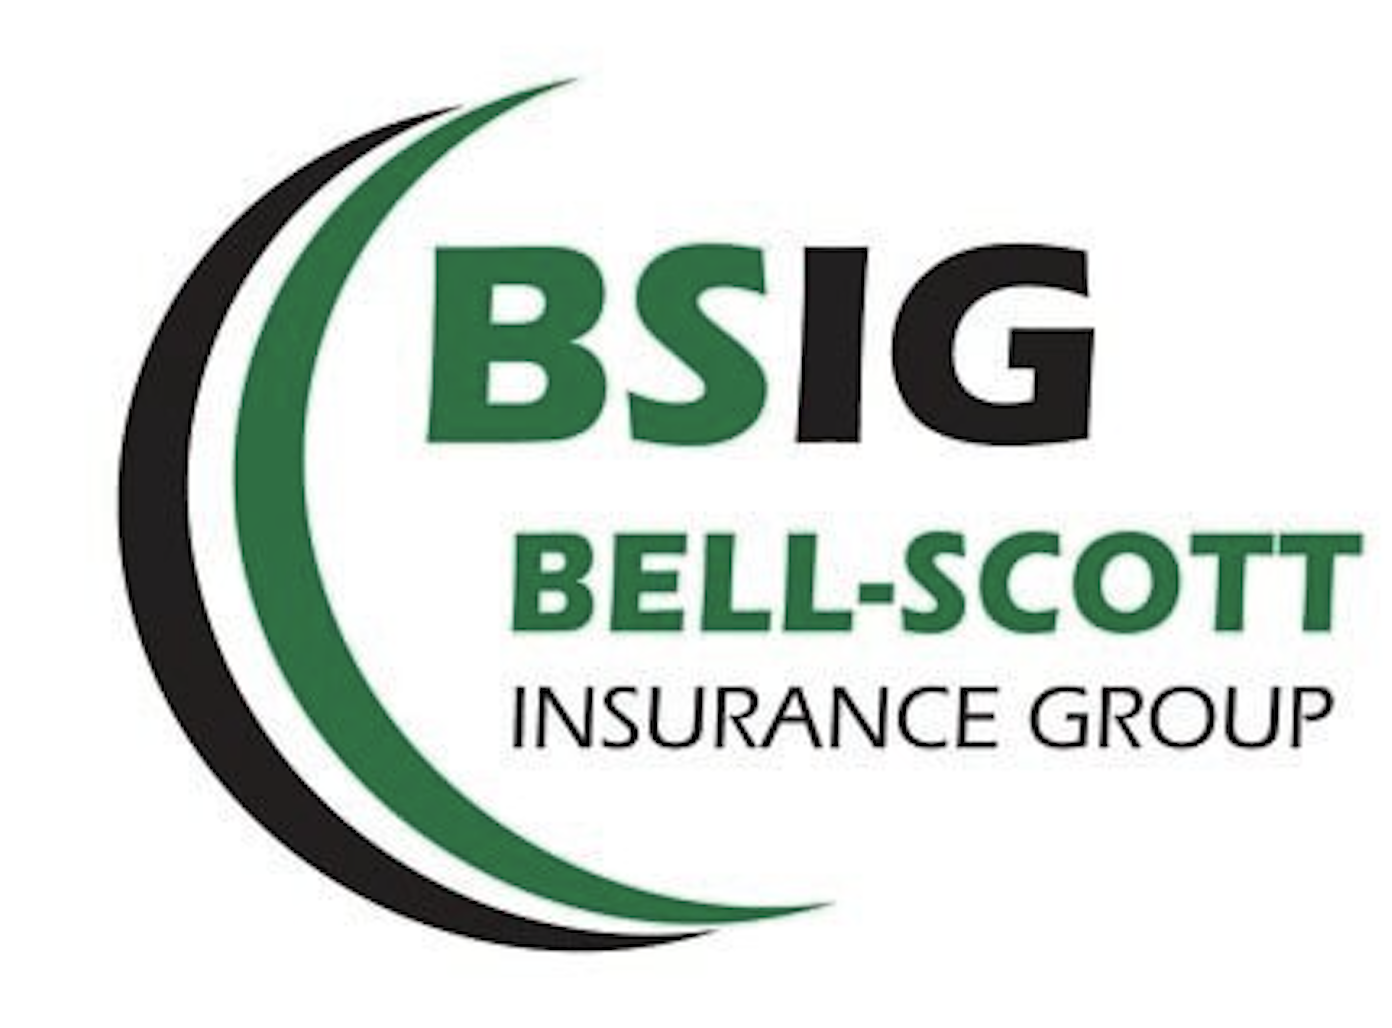 Bell-Scott Insurance Group